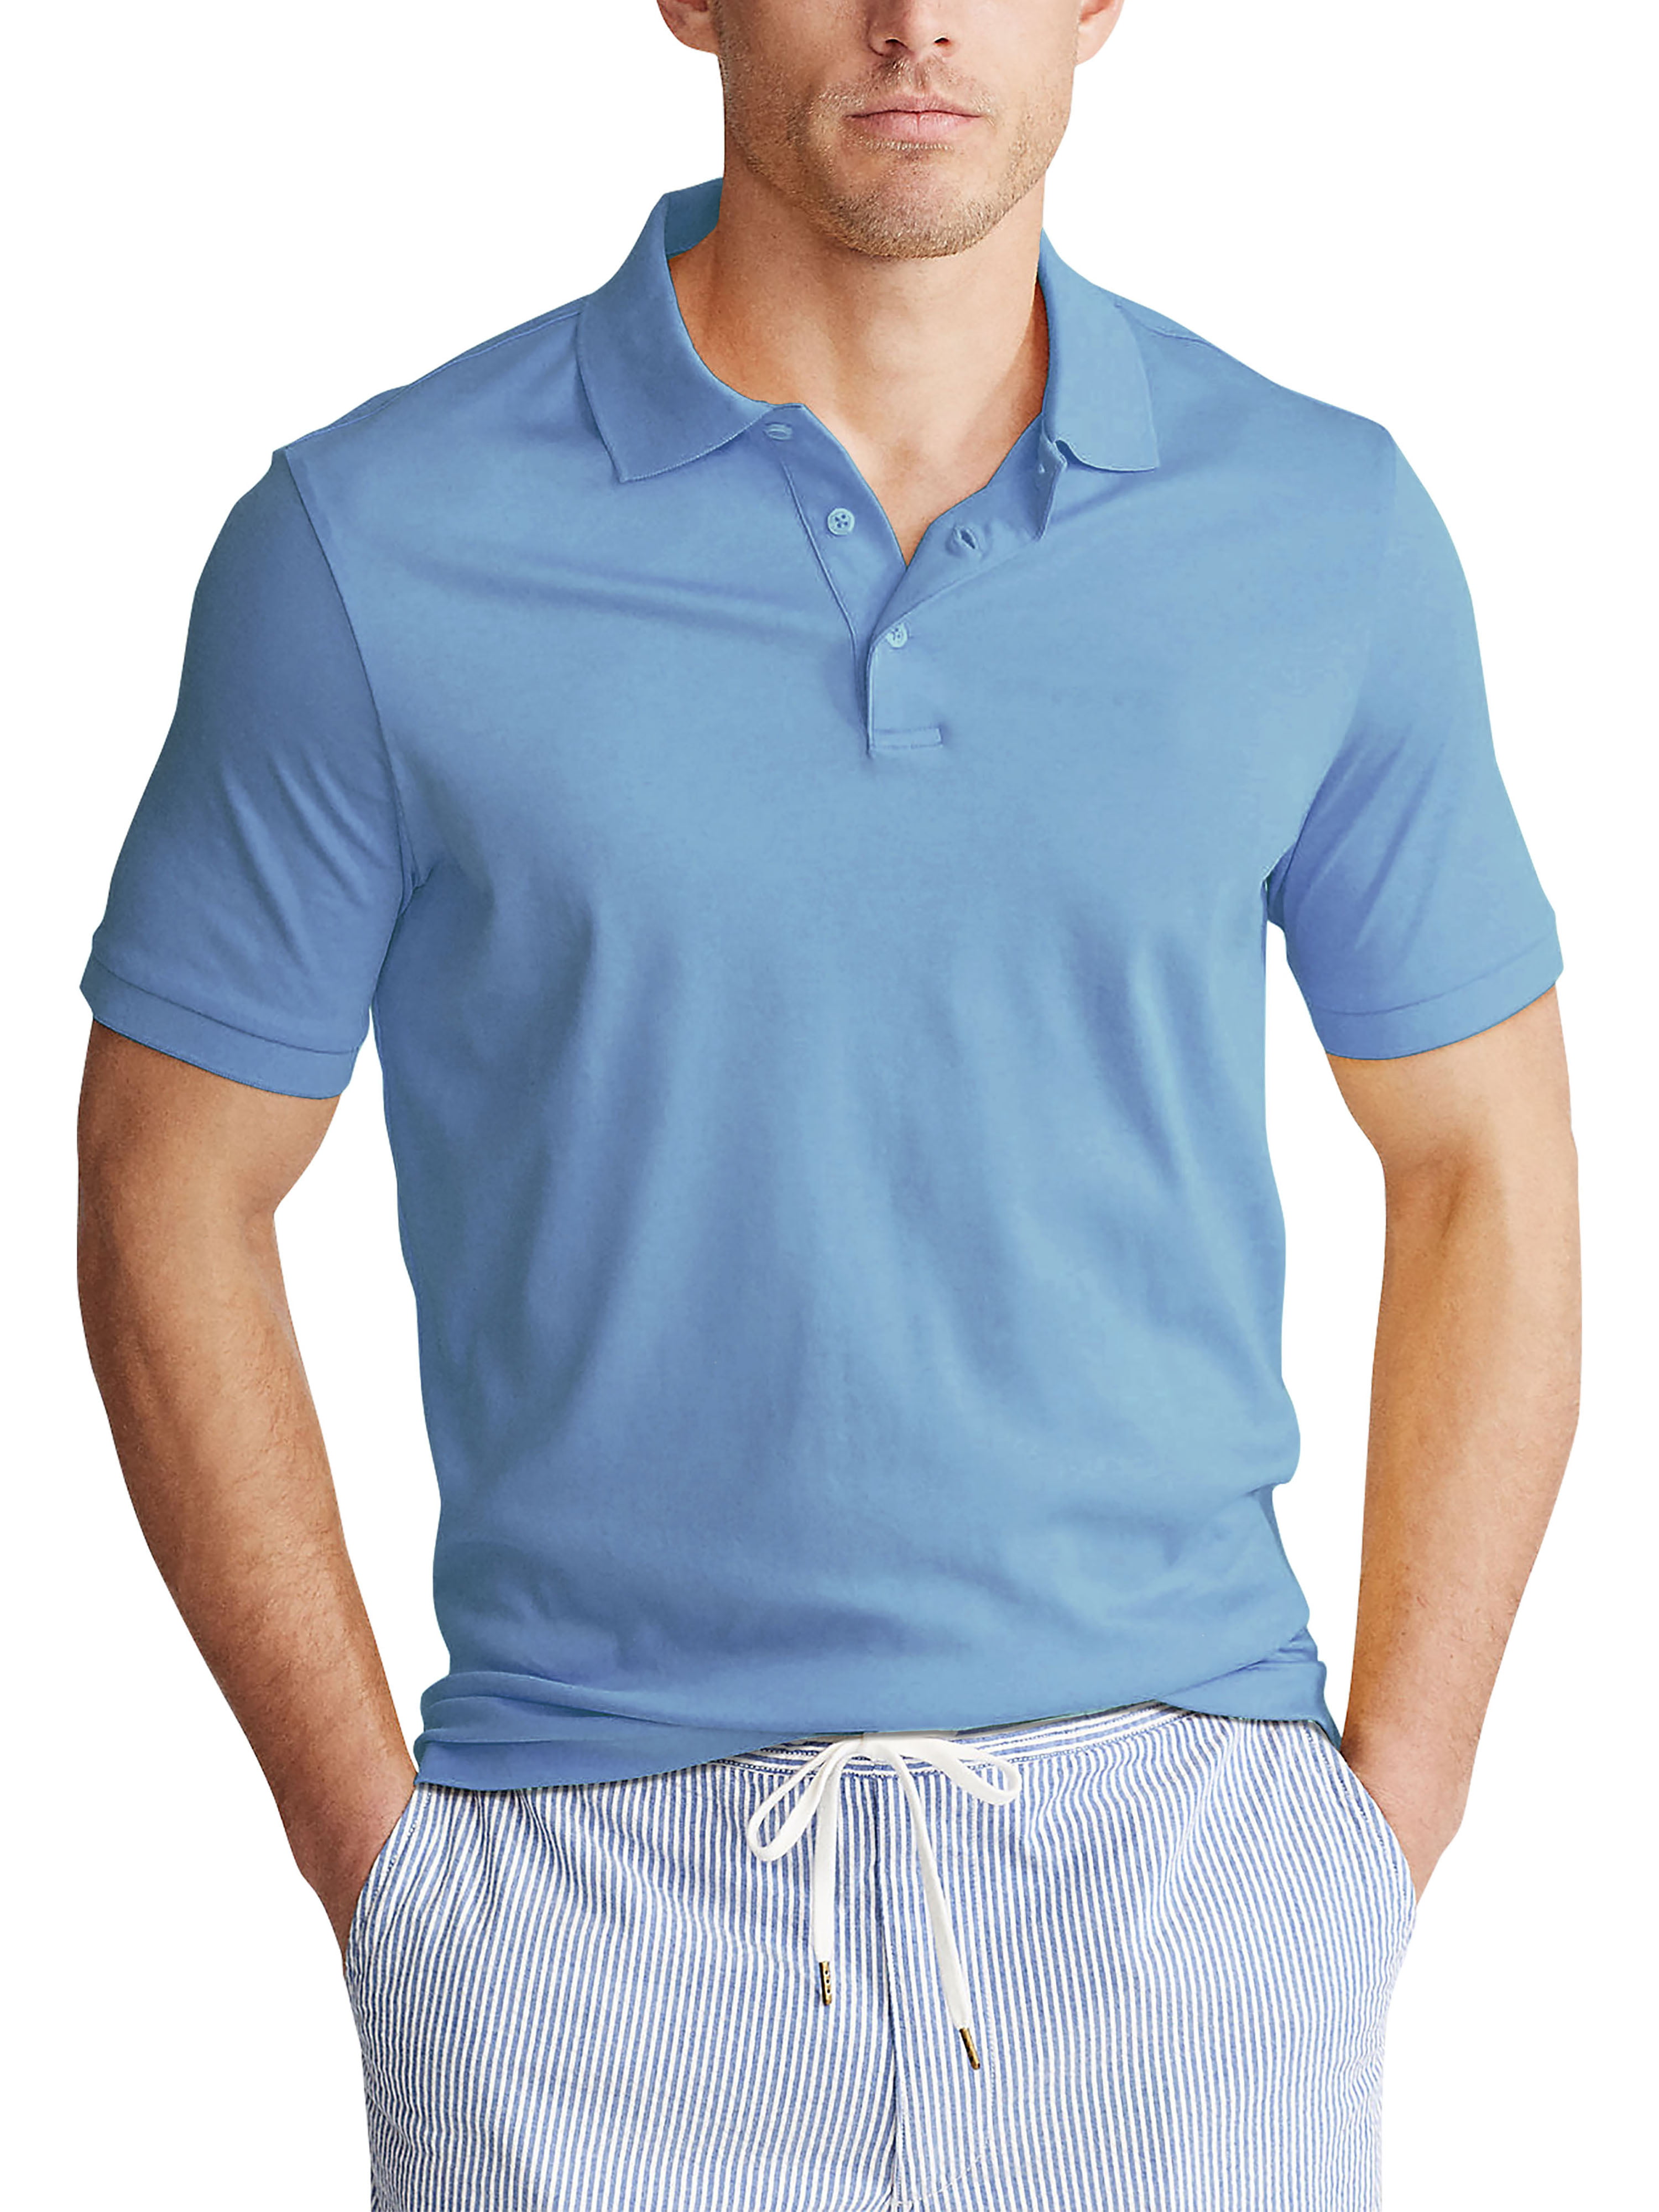 B91xZ Mens Shirts Casual Stylish Men'S Regular Fit Shirt Preppy